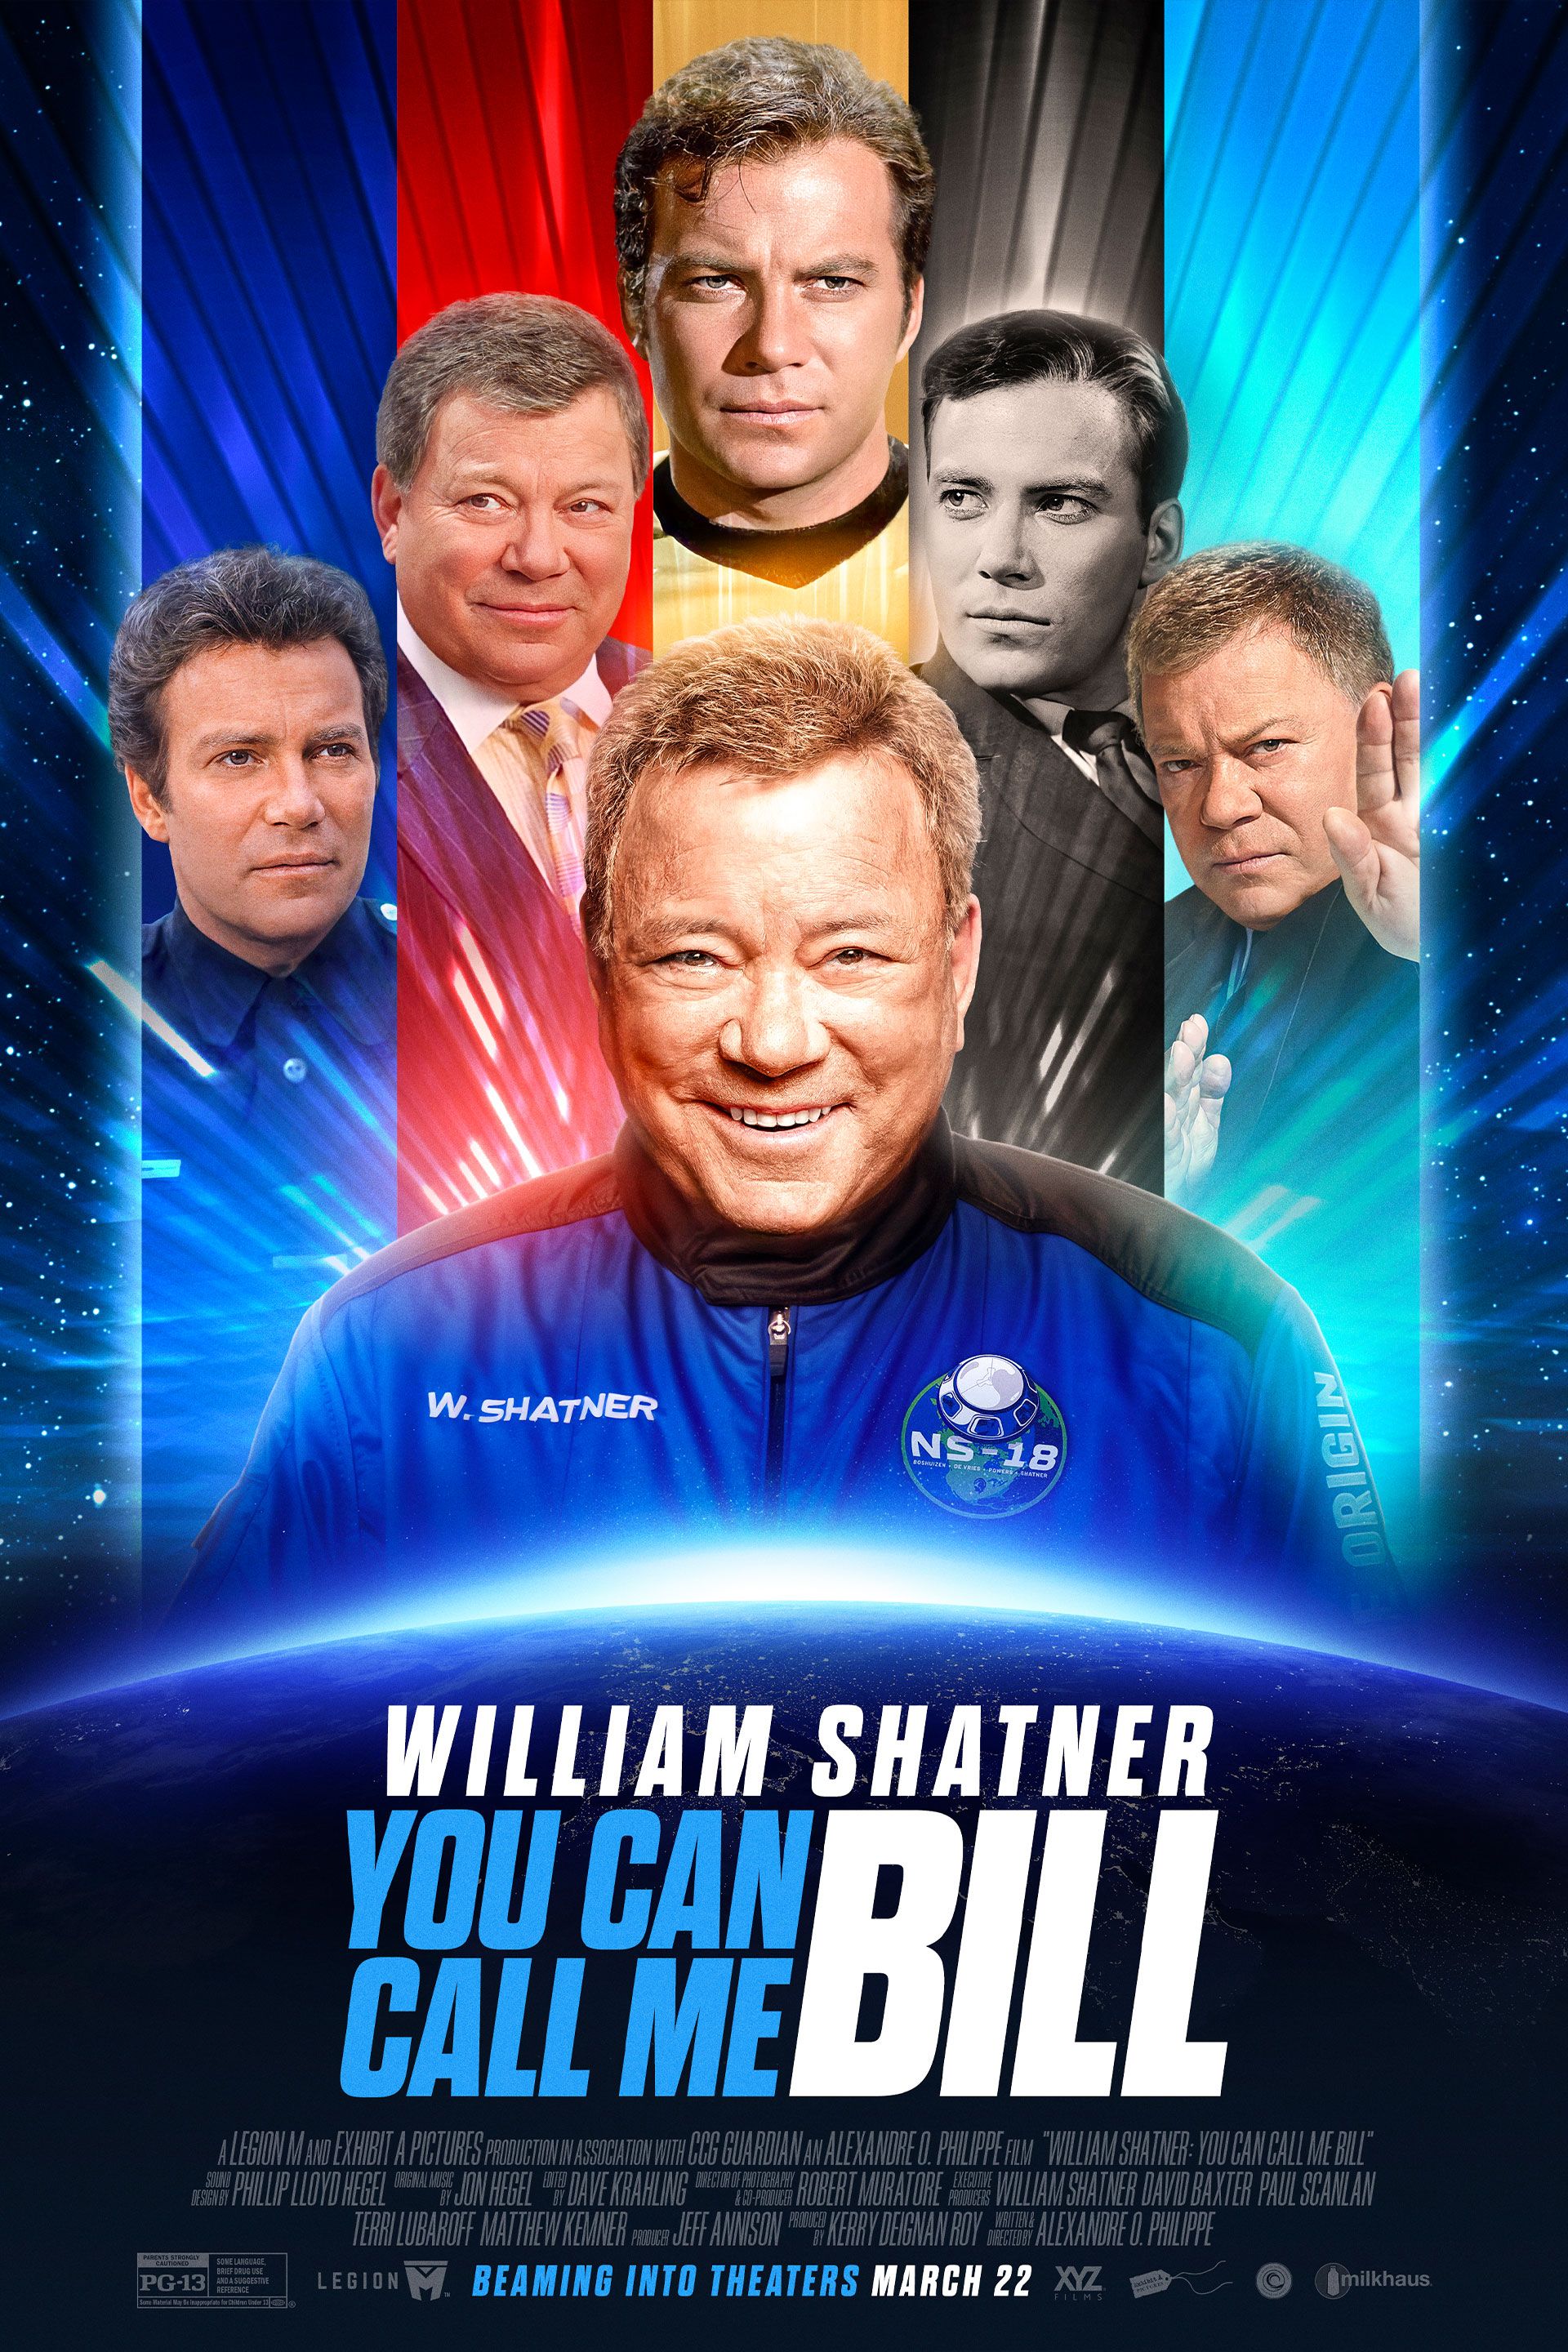 Póster de la película Puedes llamarme Bill que muestra a William Shatner con un traje espacial y como varios personajes, incluido el Capitán Kirk de Star Trek.